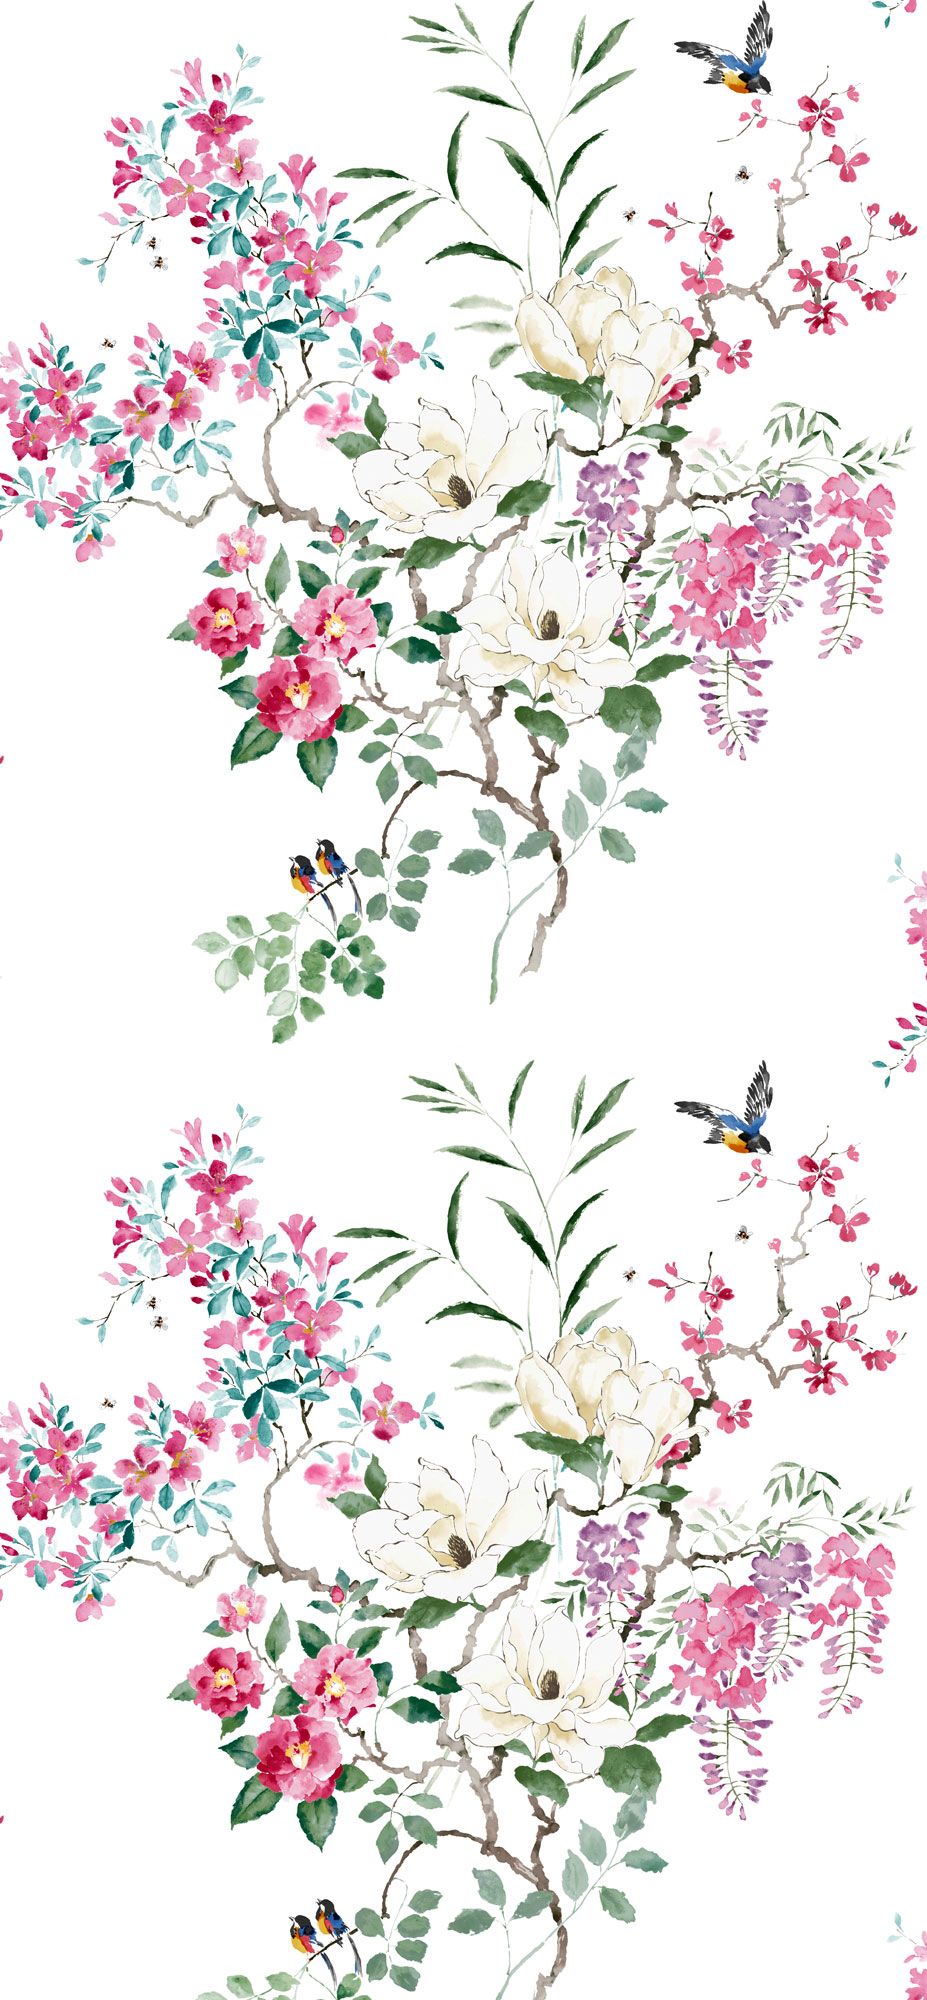 englische Tapete Sanderson Kollektion 2020 Magnolia & Blossom zum online kaufen